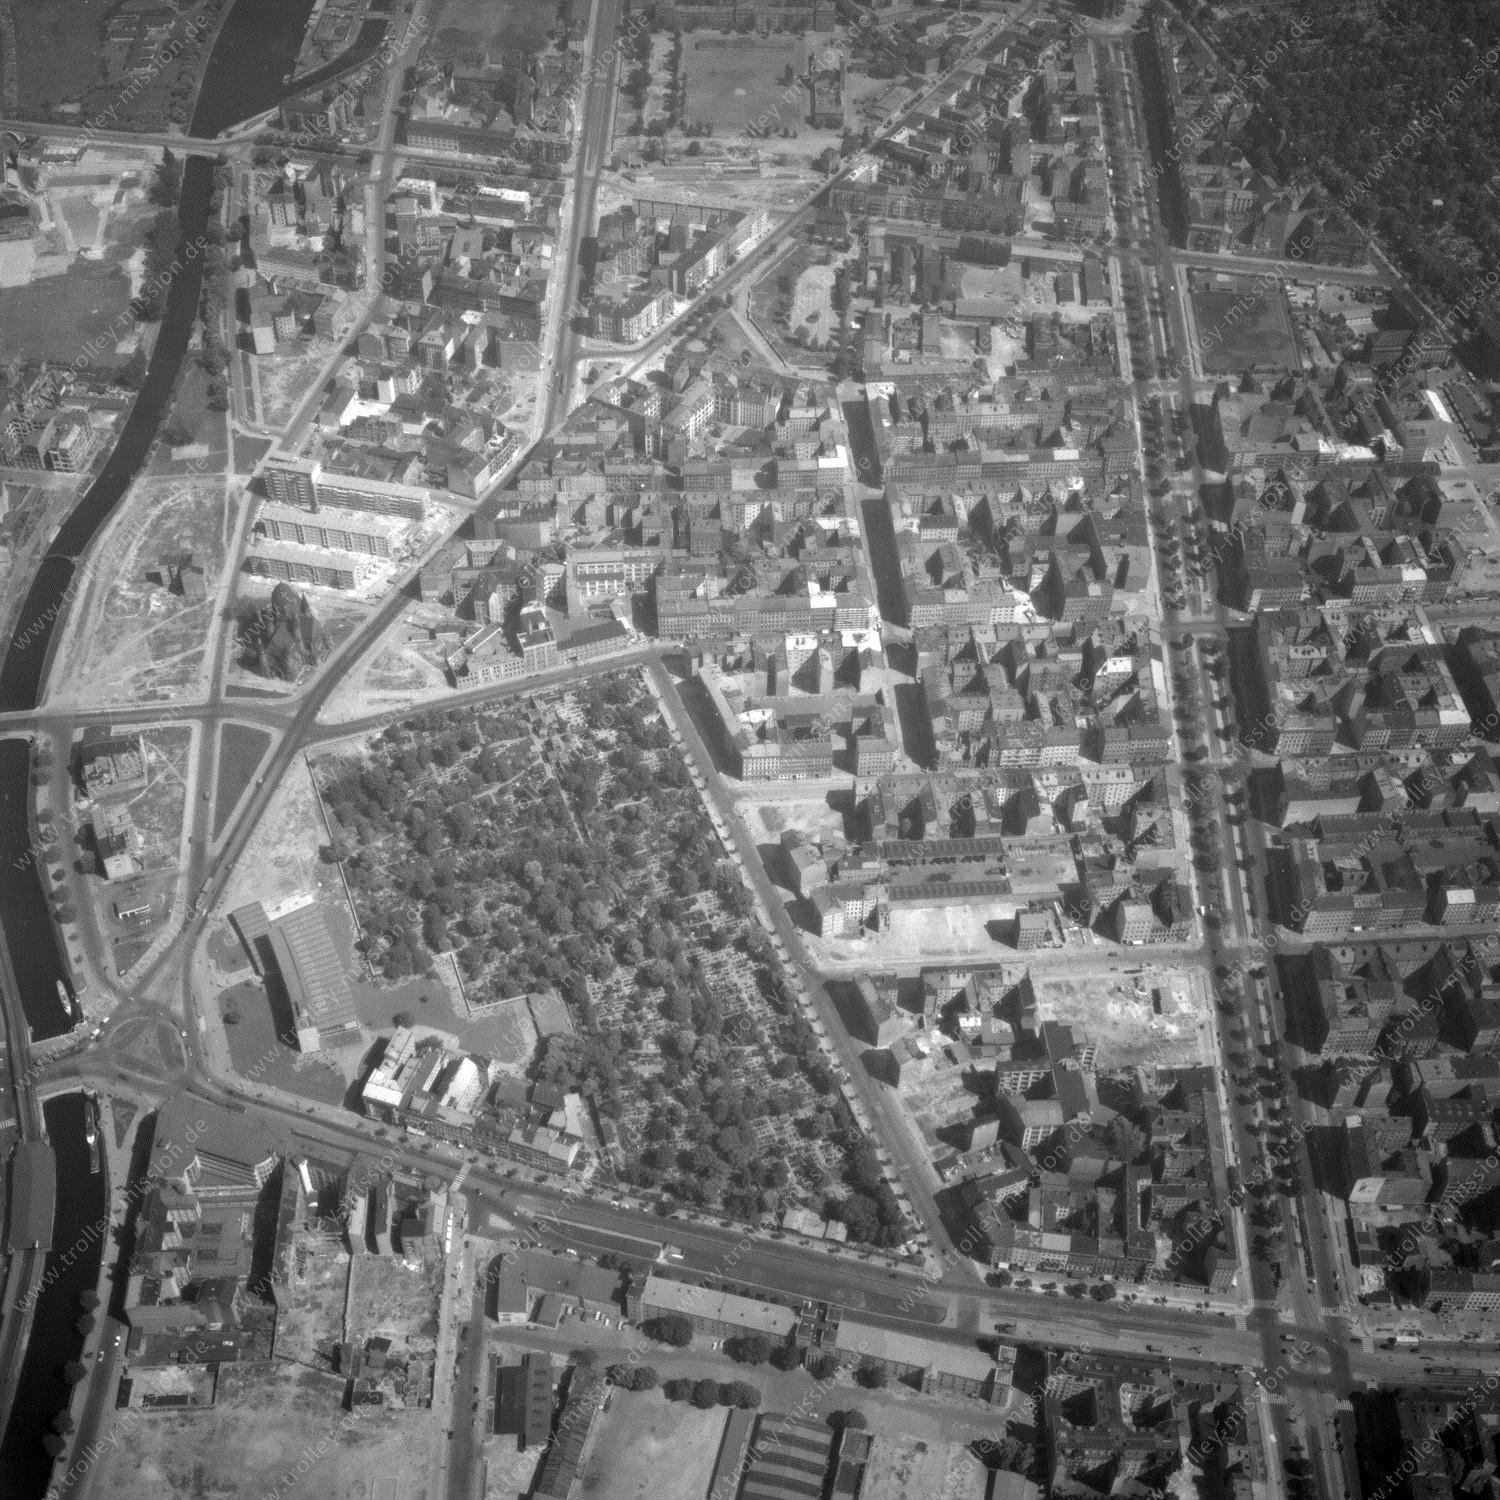 Alte Fotos und Luftbilder von Berlin - Luftbildaufnahme Nr. 05 - Historische Luftaufnahmen von West-Berlin aus dem Jahr 1954 - Flugstrecke Juliett